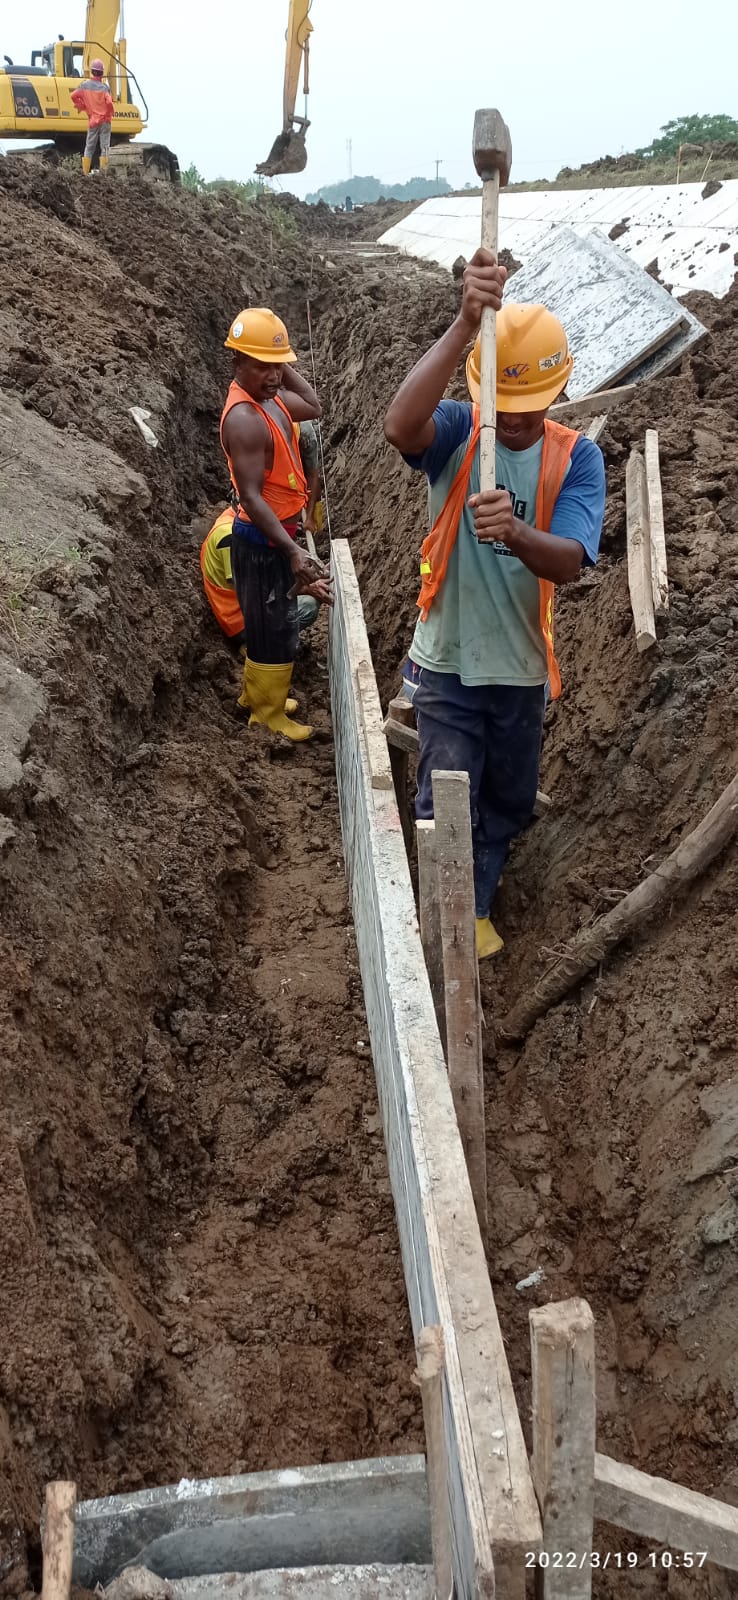 PT. Waskita Karya Buat Pintu Air di Desa Rancasari